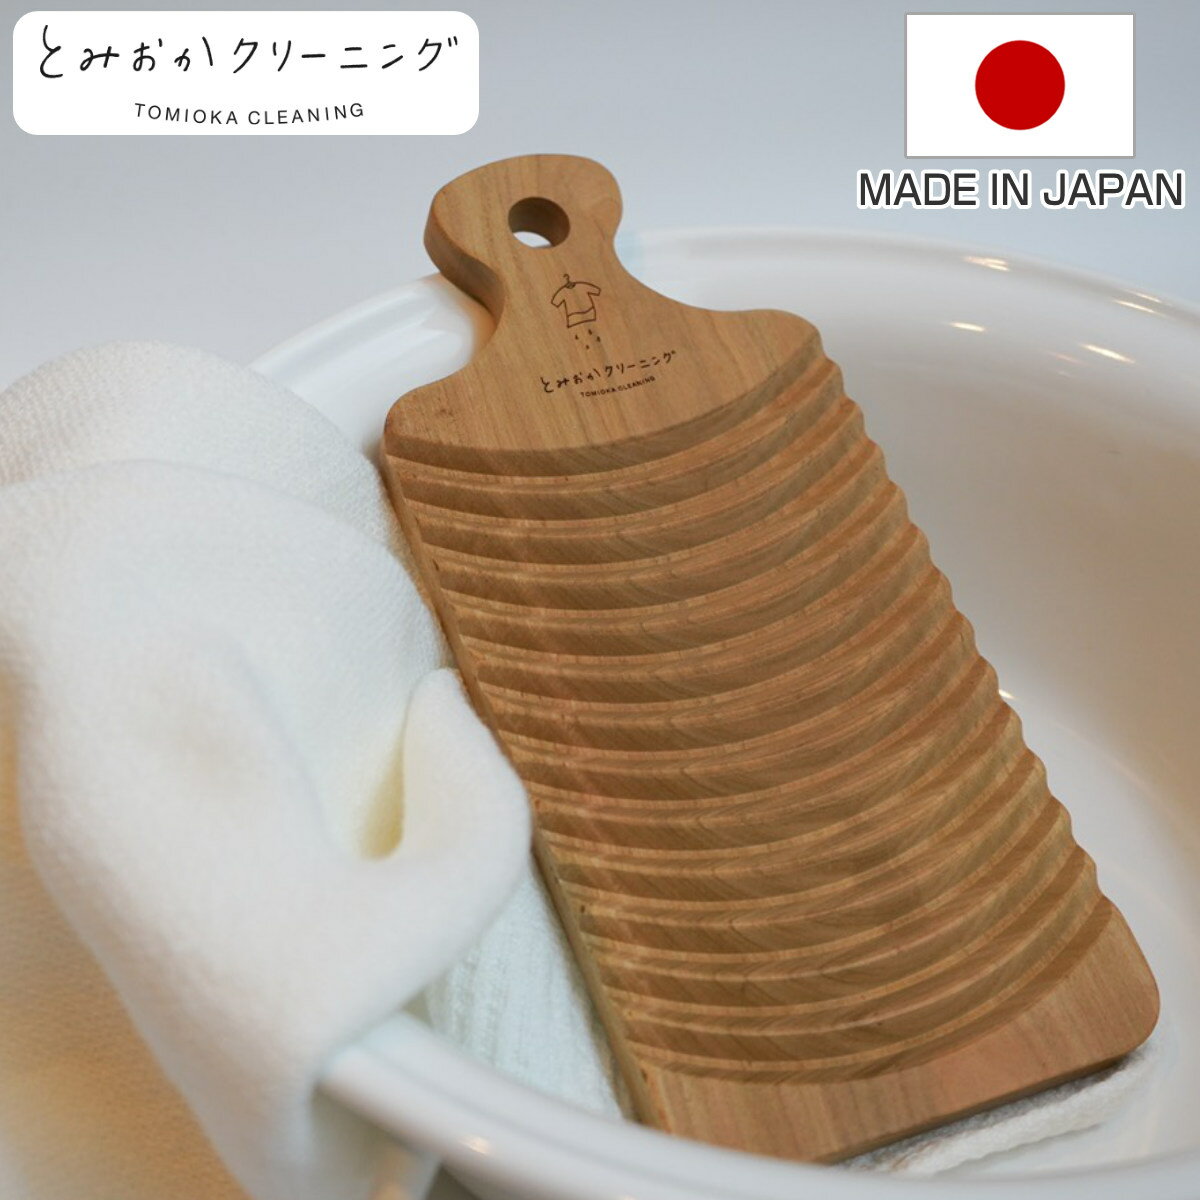 サイズ約 幅12×奥行26×高さ1.5（cm）内容量1枚材質サクラ生産国日本製注意事項※商品ページ内には別の商品を含む画像を使用しています※天然素材のため、木目は商品によってそれぞれ違います区分返品・キャンセル区分（小型商品）ギフトラッピングページを見る洗濯板 とみおかクリーニング さくらの洗濯板おすすめポイント昔ながらの便利な洗濯板ちょっとした手洗いに大活躍するコンパクトサイズの洗濯板です。手洗いの元祖ともいわれる便利な道具で、手でもみ洗いすることにより生地を傷めずによく汚れが落ちます。どろんこの靴下やふきん洗いや洗濯機前の予備洗いにぴったりです。頑固な汚れをよく落とす山波カーブが程よく汚れにあたり、楽に汚れを落とせます。泥汚れや食べこぼしのシミなど、部分洗いしたい時に便利です。商品詳細国産のサクラの木を使用水に強く、硬くてなめらかな国産のサクラの木を使用しています。使い続けていてもくすみの少ない明るい色が特徴で、木の柔らかいぬくもりを感じながら楽しくお洗濯が出来ます。しっかり握れる持ち手付き手にすっぽりと収まる持ち手は、洗濯物をこすり洗いする時に力が入りやすいので洗いやすいです。持ち手部分は引っ掛け穴があるので、掛けて収納したり干したりもできます。2サイズ展開でお好みのサイズをコンパクトサイズの洗濯板とコンパクトサイズよりもさらに小さい携帯用洗濯板の2サイズ展開となっています。洗面所の広さや、持ち運びの有無によってお選び頂けます。ブランド紹介とみおかクリーニング知床のそばにある人口より牛の数の方が多い町、北海道中標津町で創業したとみおかクリーニングがお届けする洗濯用品ブランドです。老舗クリーニング店だからこそ人と環境にやさしくありたい、そんな思いからプロの現場で培ってきた知識や技術を活かしたたくさんの洗濯用品をご用意しています。クリーニング店が提案する毎日がワクワクするようなライフスタイルをセンタクしてみませんか。ご注意点木目について天然素材のため、木目は商品によってそれぞれ違います。個々の木の味としてお楽しみください。シリーズ紹介さくらの洗濯板さくらの洗濯板 携帯用関連キーワード：さくら 汚れ 時短 家事 便利 襟 エリ 袖 靴下 下着 衛生 清潔 エコ 木目 使いやすい 吊り下げ 頑固汚れ 人気 おしゃれ お洒落 オシャレ かわいい 可愛い カワイイ LH13473 関連商品はこちら洗濯板 携帯用 とみおかクリーニング さくらの2,430円洗濯板 STYLE JAPAN 小さな洗濯板 2,890円洗濯板 STYLE JAPAN 小さな小さな洗2,090円洗濯桶 ラブウォッシュ 488円洗濯板 Arao!洗濯板 せんたく板 洗濯 478円まとめ洗い 洗濯ネット 718円ランドリーネット とみおかクリーニング 長方形1,320円ランドリーネット とみおかクリーニング 舟形 990円洗濯ネット 大物まとめ洗い専用ネット キャッチ818円洗濯ネット 小物まとめ洗い専用ネット キャッチ718円ブラシ 洗濯 部分洗い洗濯ブラシ W きれいに1,280円ランドリーネット とみおかクリーニング 筒型 990円